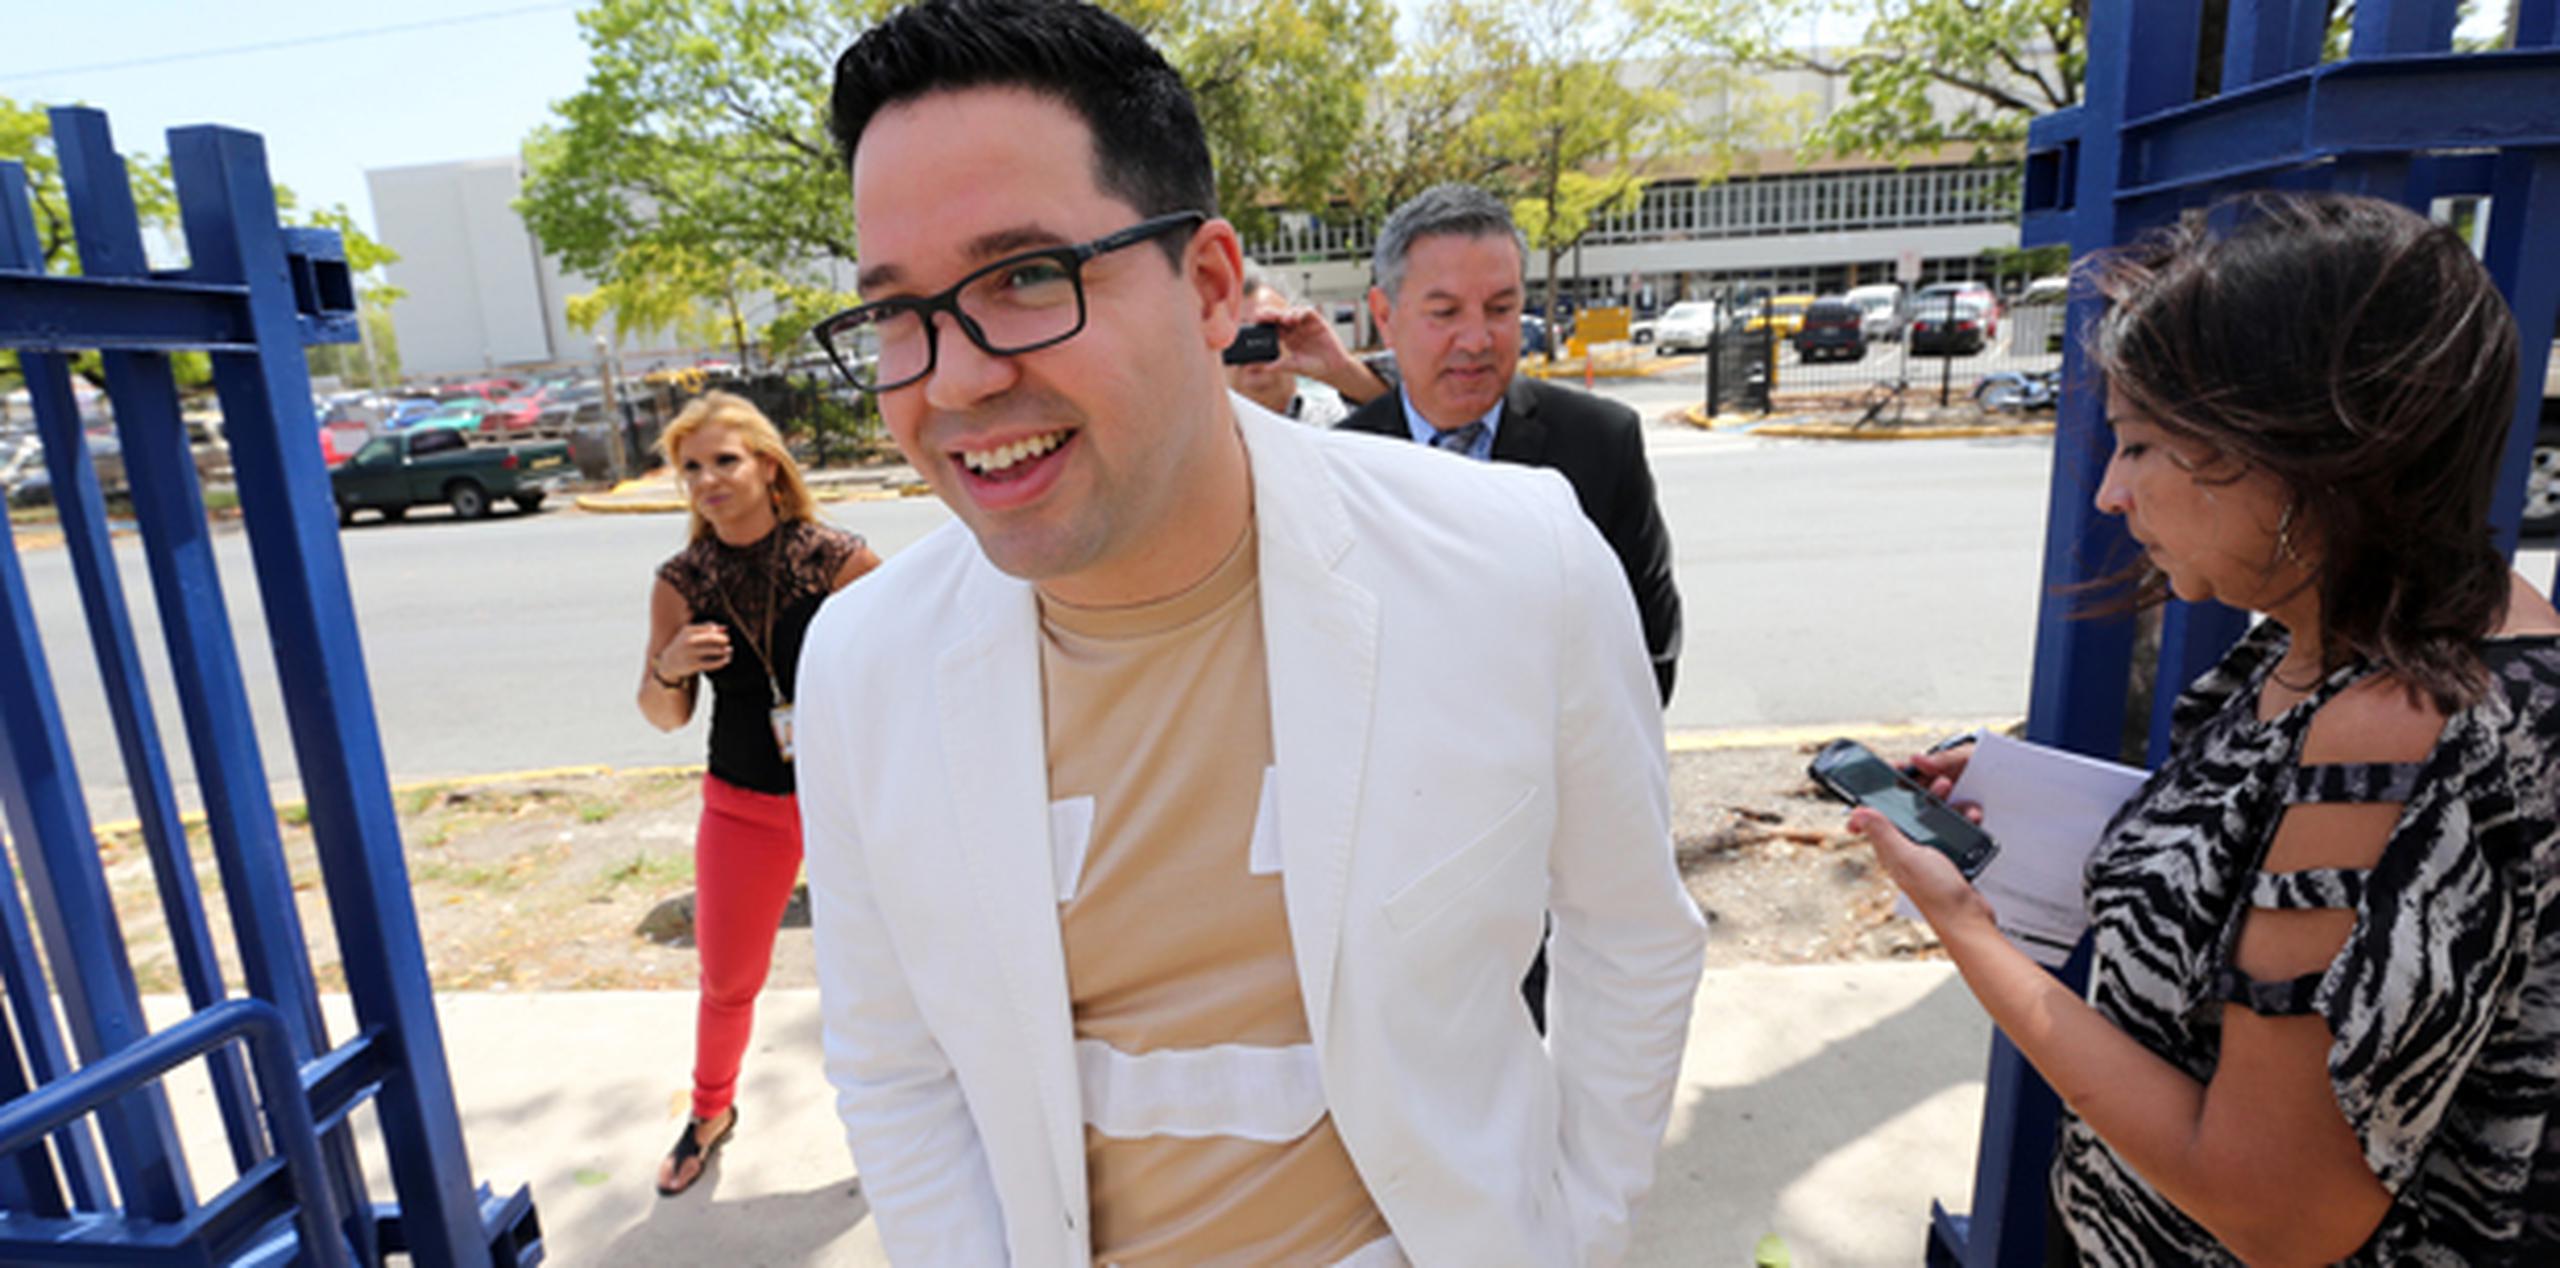 Carrión acudió hoy junto a su abogado, Antonio Figueroa ante el examinador administrativo en la División Legal de la Policía.  (juan.martinez@gfrmedia.com)